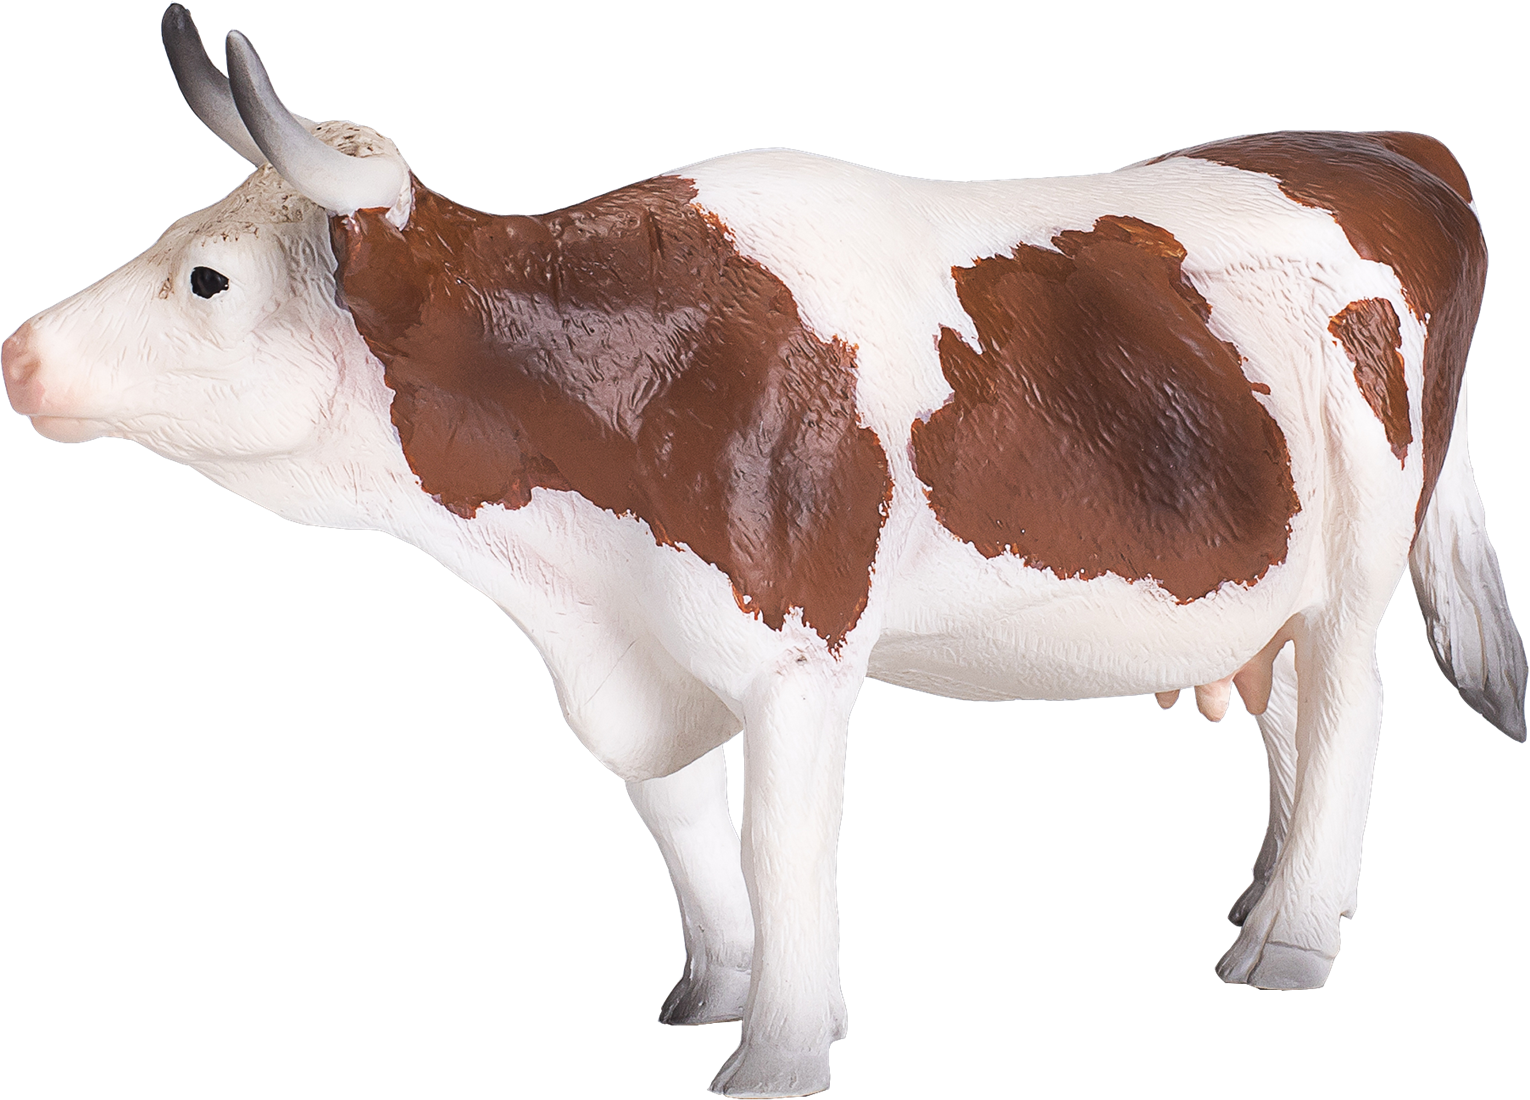 Vache Simmental jouet de la ferme Mojo - 387220